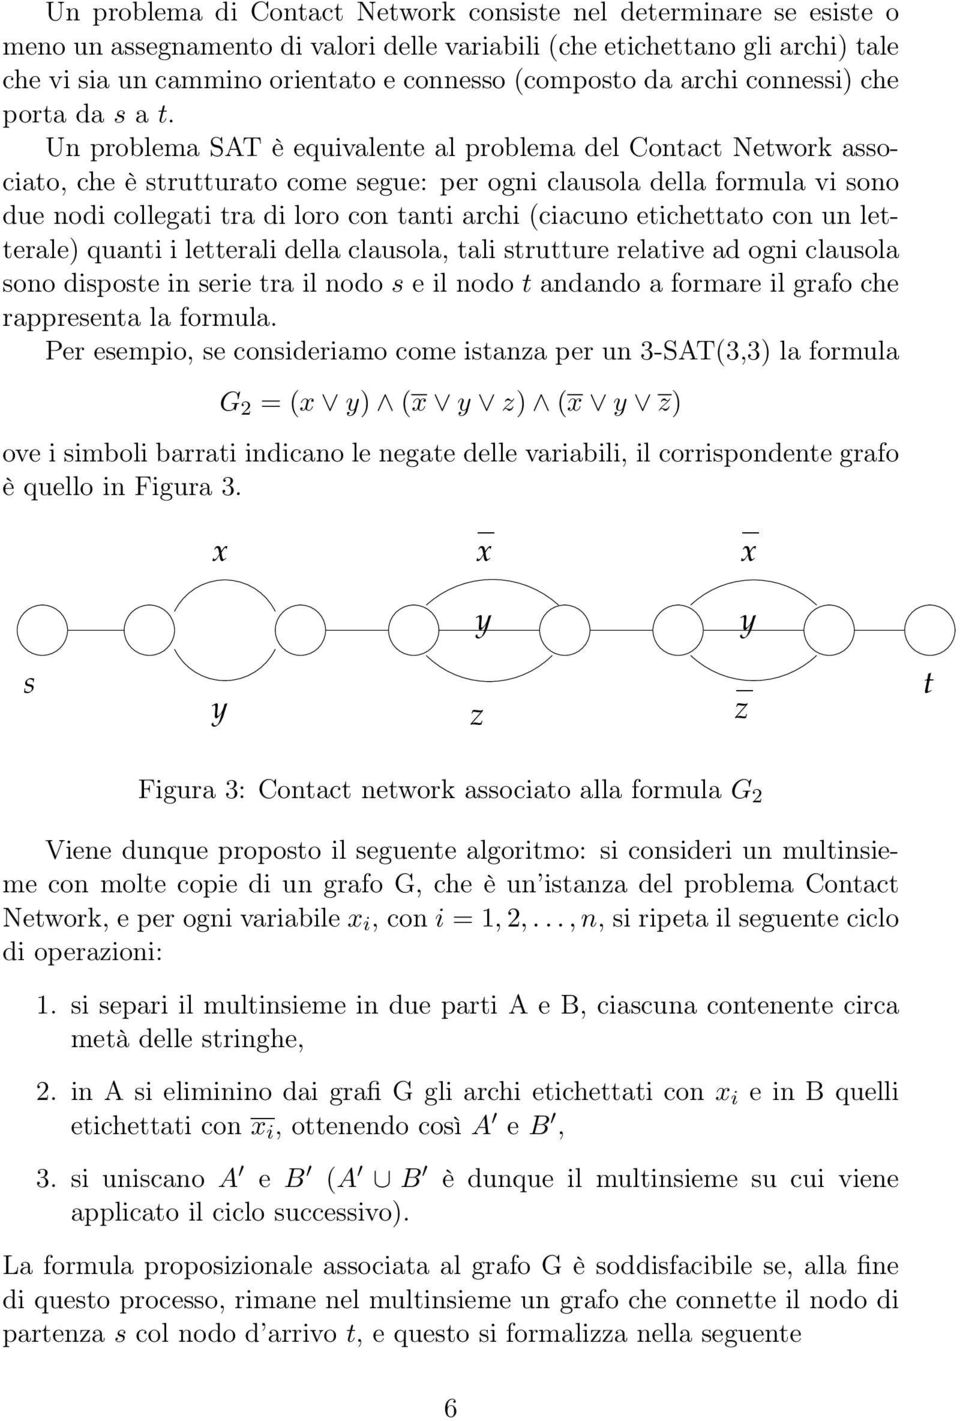 Un problema SAT è equivalente al problema del Contact Network associato, che è strutturato come segue: per ogni clausola della formula vi sono due nodi collegati tra di loro con tanti archi (ciacuno